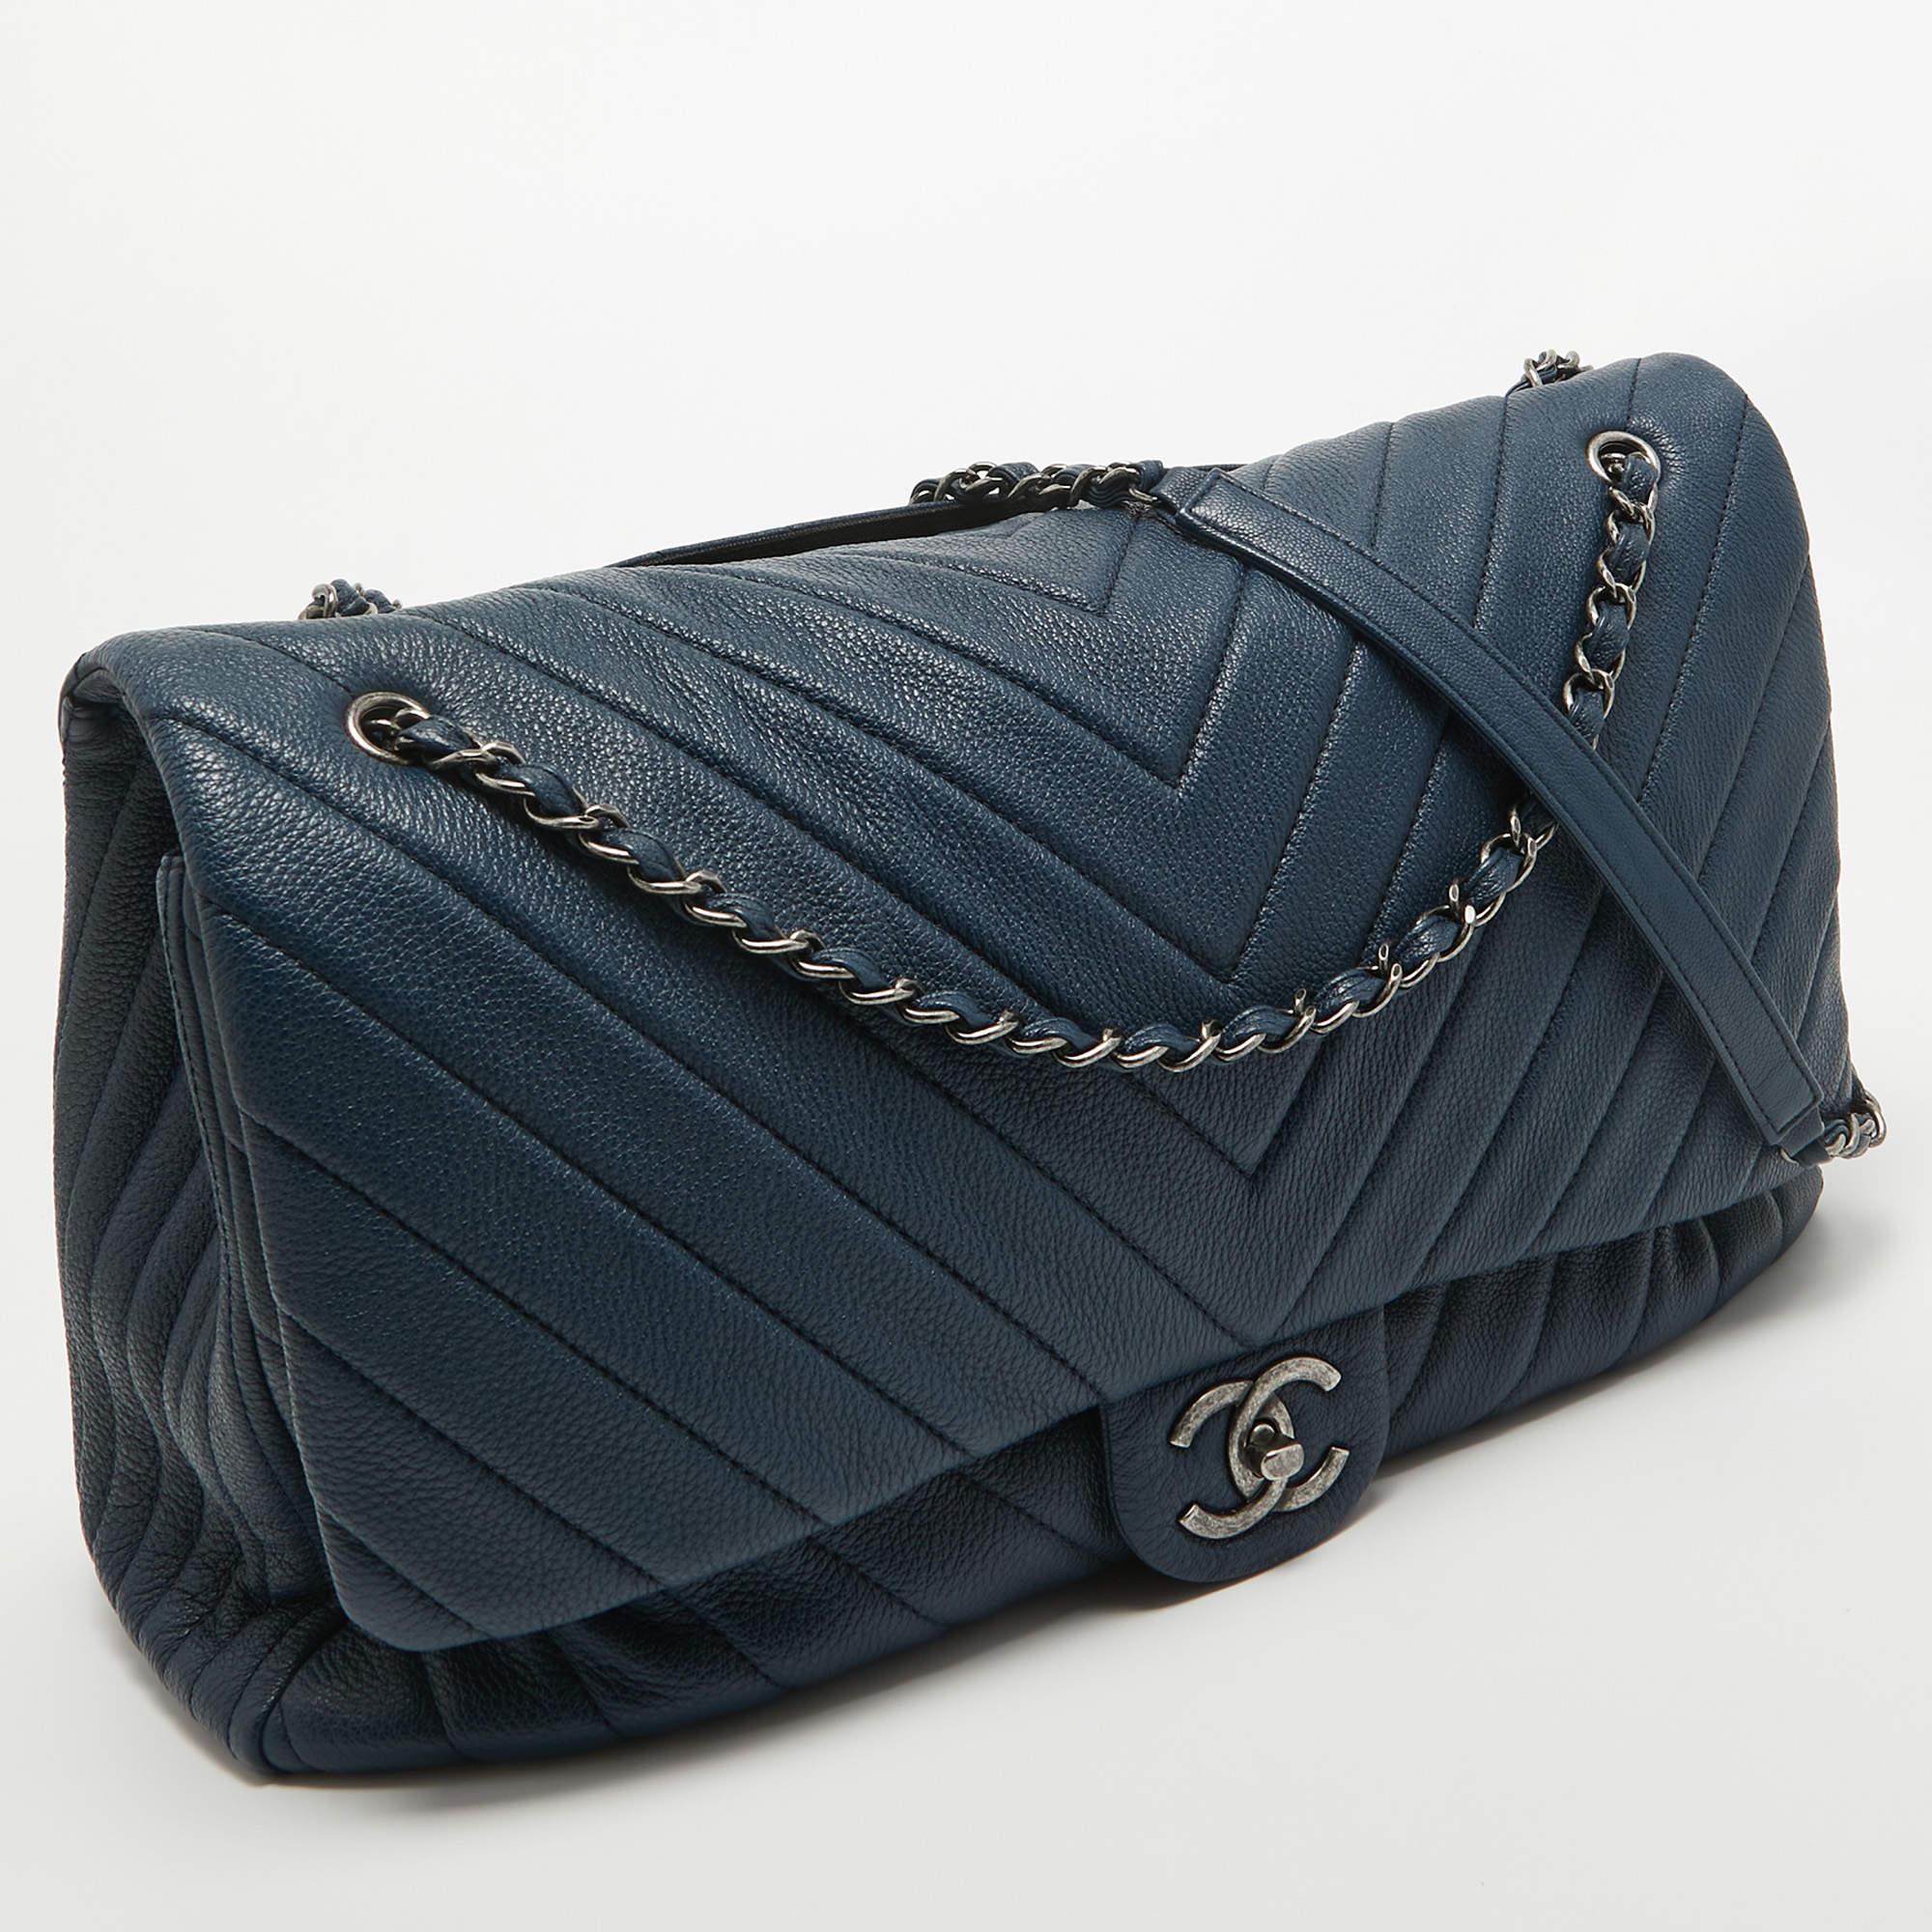 Offrez-vous le luxe avec ce sac Chanel. Méticuleusement fabriqué à partir de matériaux de première qualité, il allie un design exquis, un savoir-faire impeccable et une élégance intemporelle. Cet accessoire de mode rehausse votre style.

